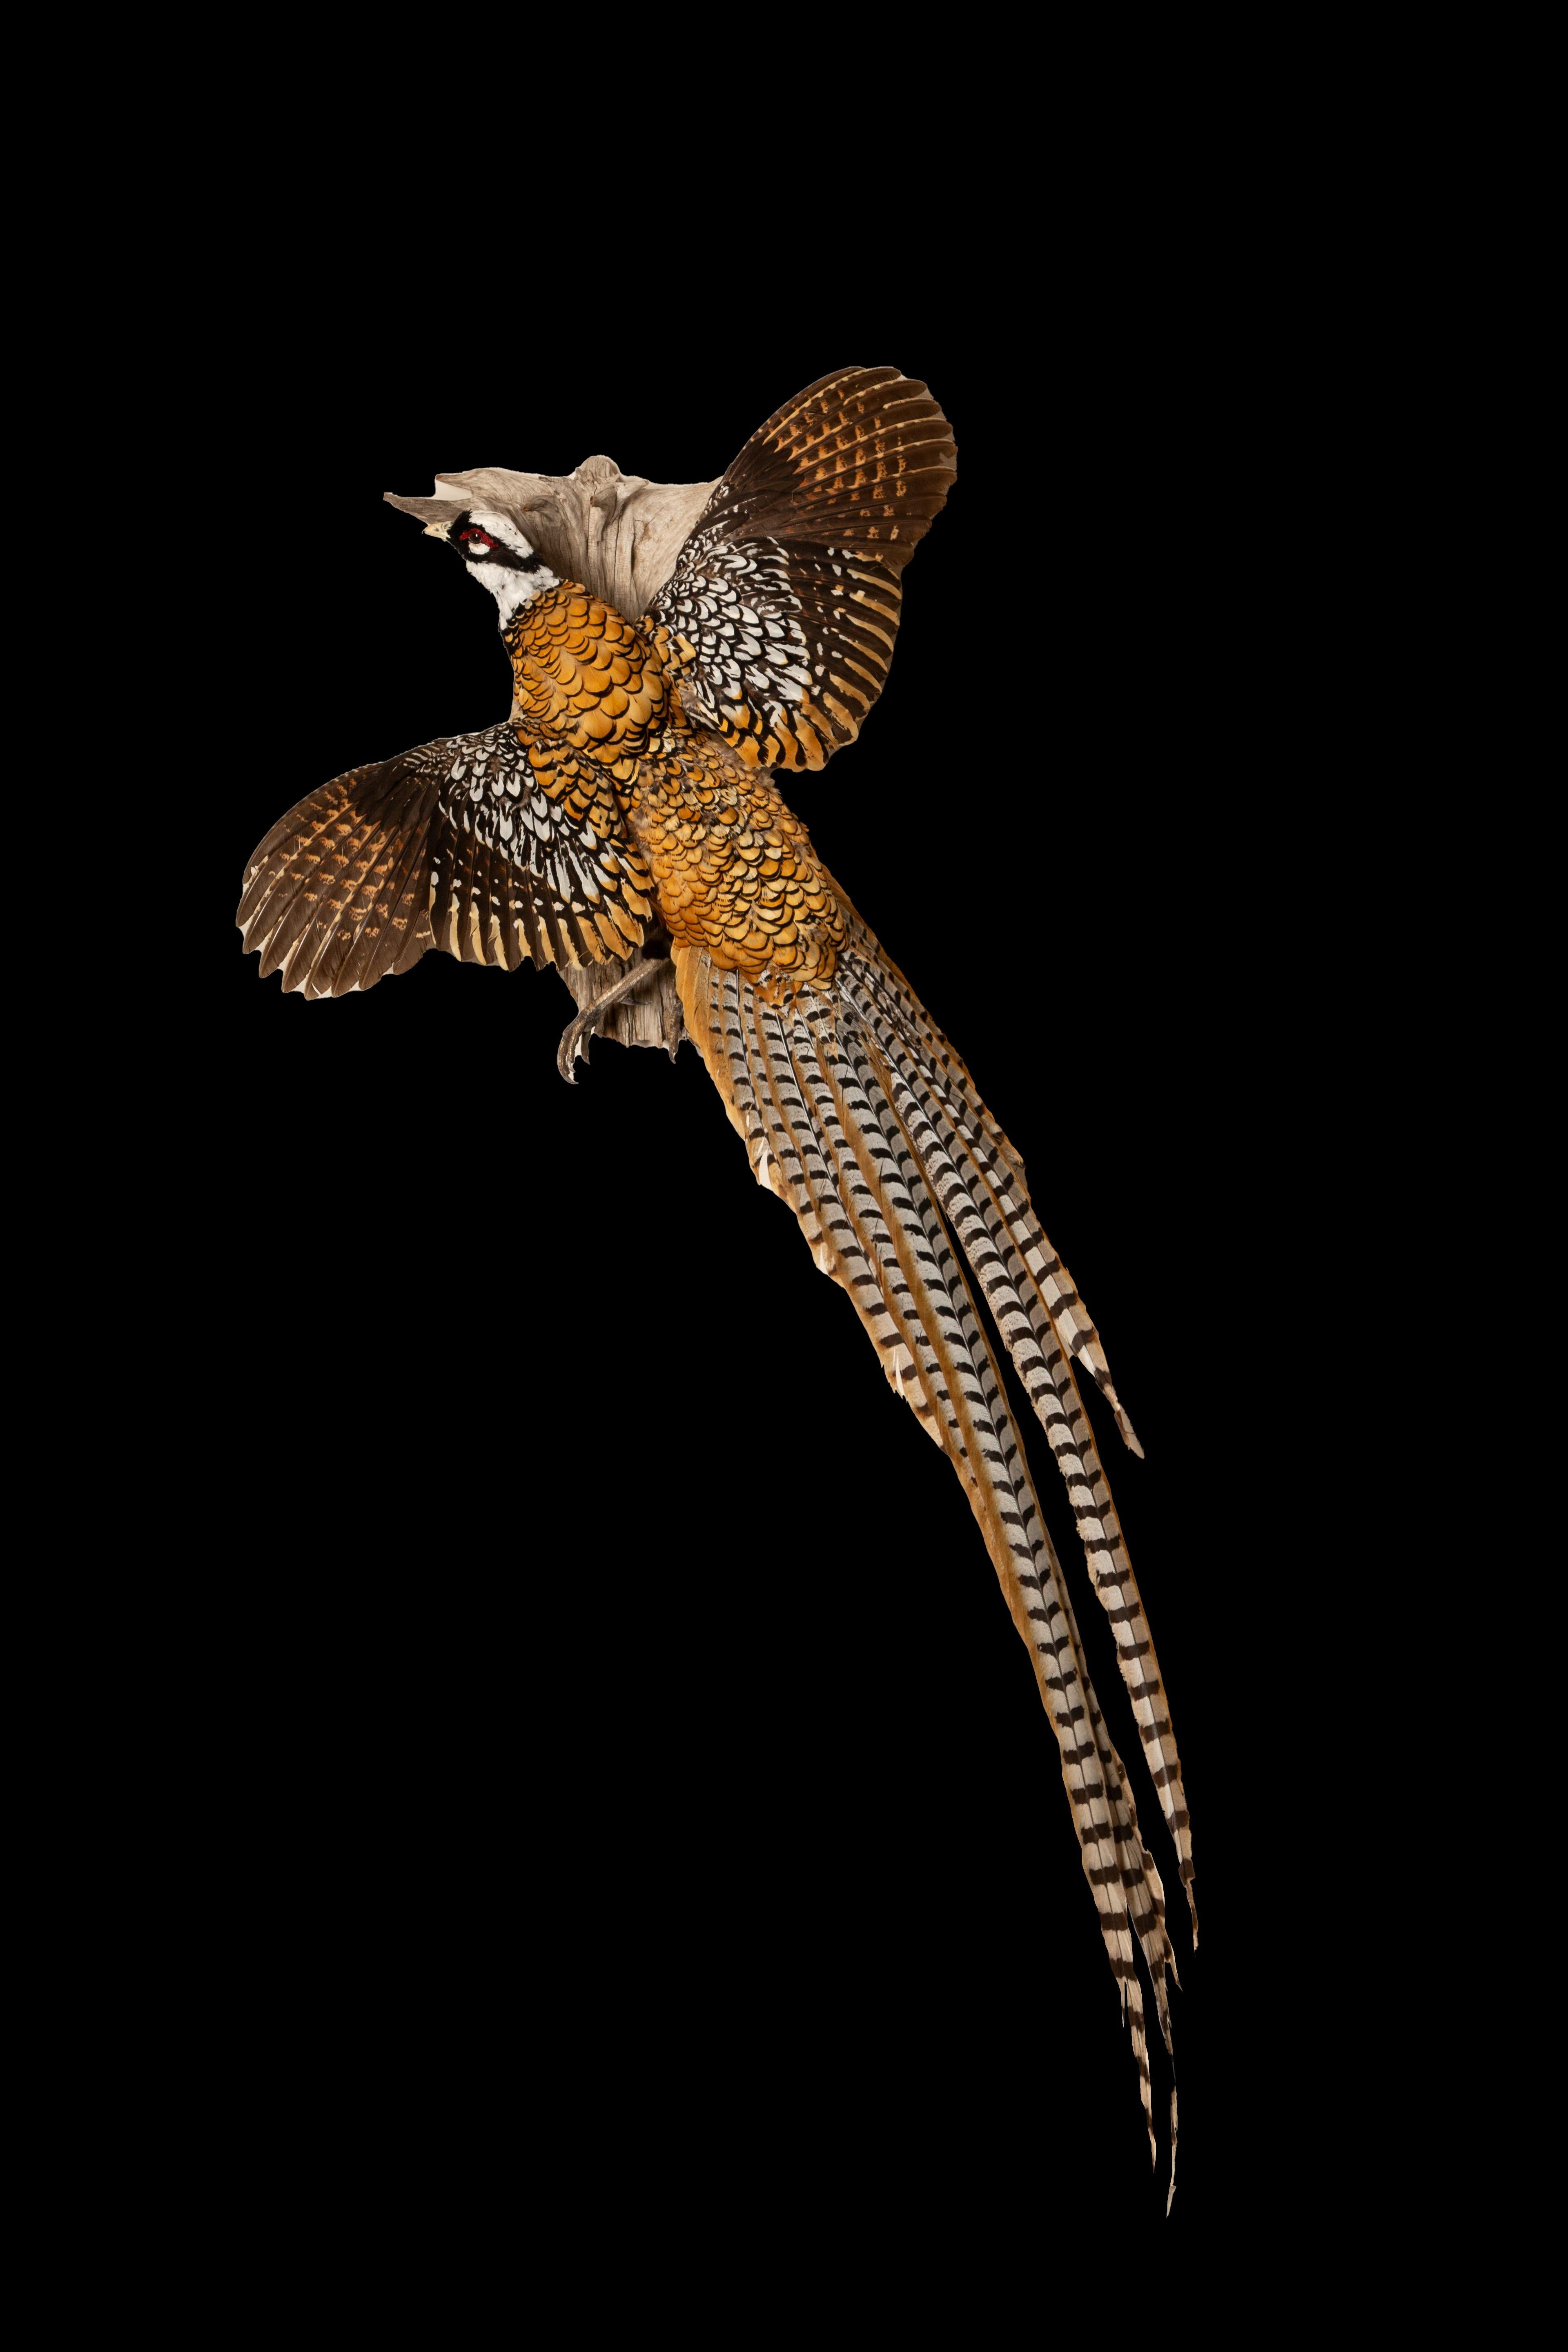  Majestätisch  Fliegender Reeves-Fasan (Syrmaticus reevesii), ein atemberaubendes, in China beheimatetes Vogelexemplar, das sorgfältig konserviert wurde, um seine komplizierte Schönheit und bemerkenswerte Geschichte zu erfassen. Dieser große Fasan,